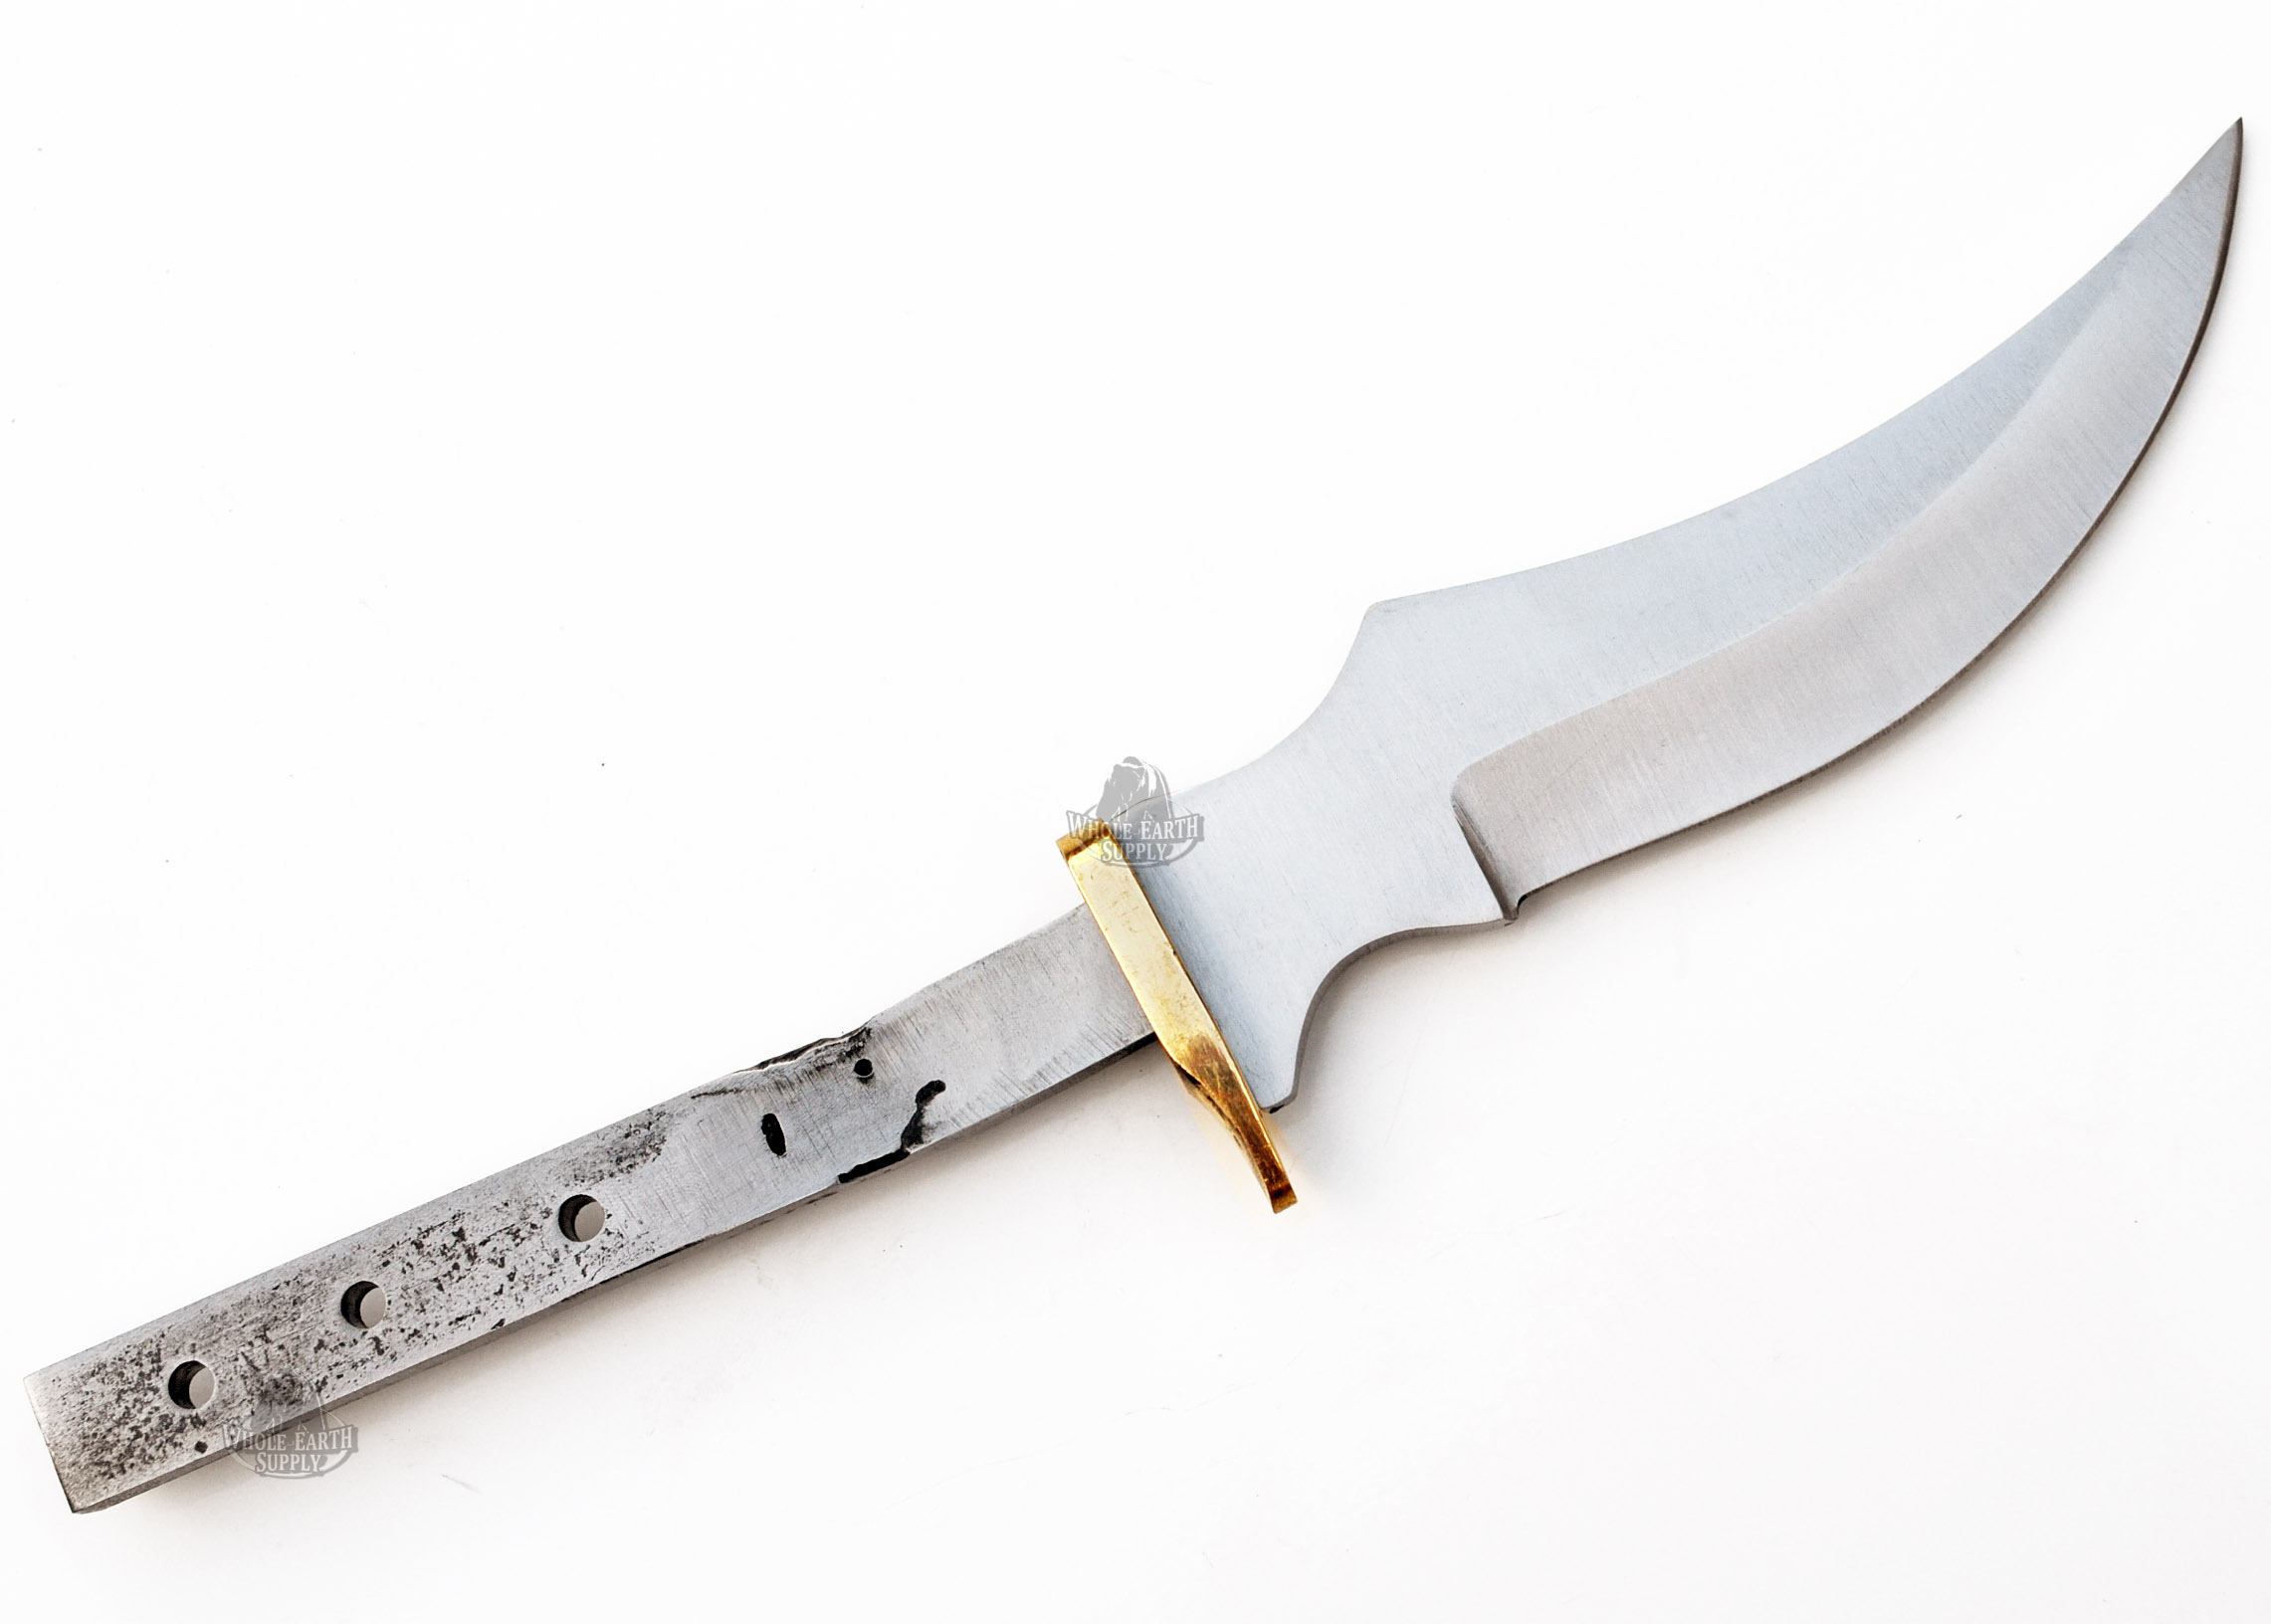 Upswept Skinner Knife Making Blade Blank Blanks Blades Knives Custom Hunting